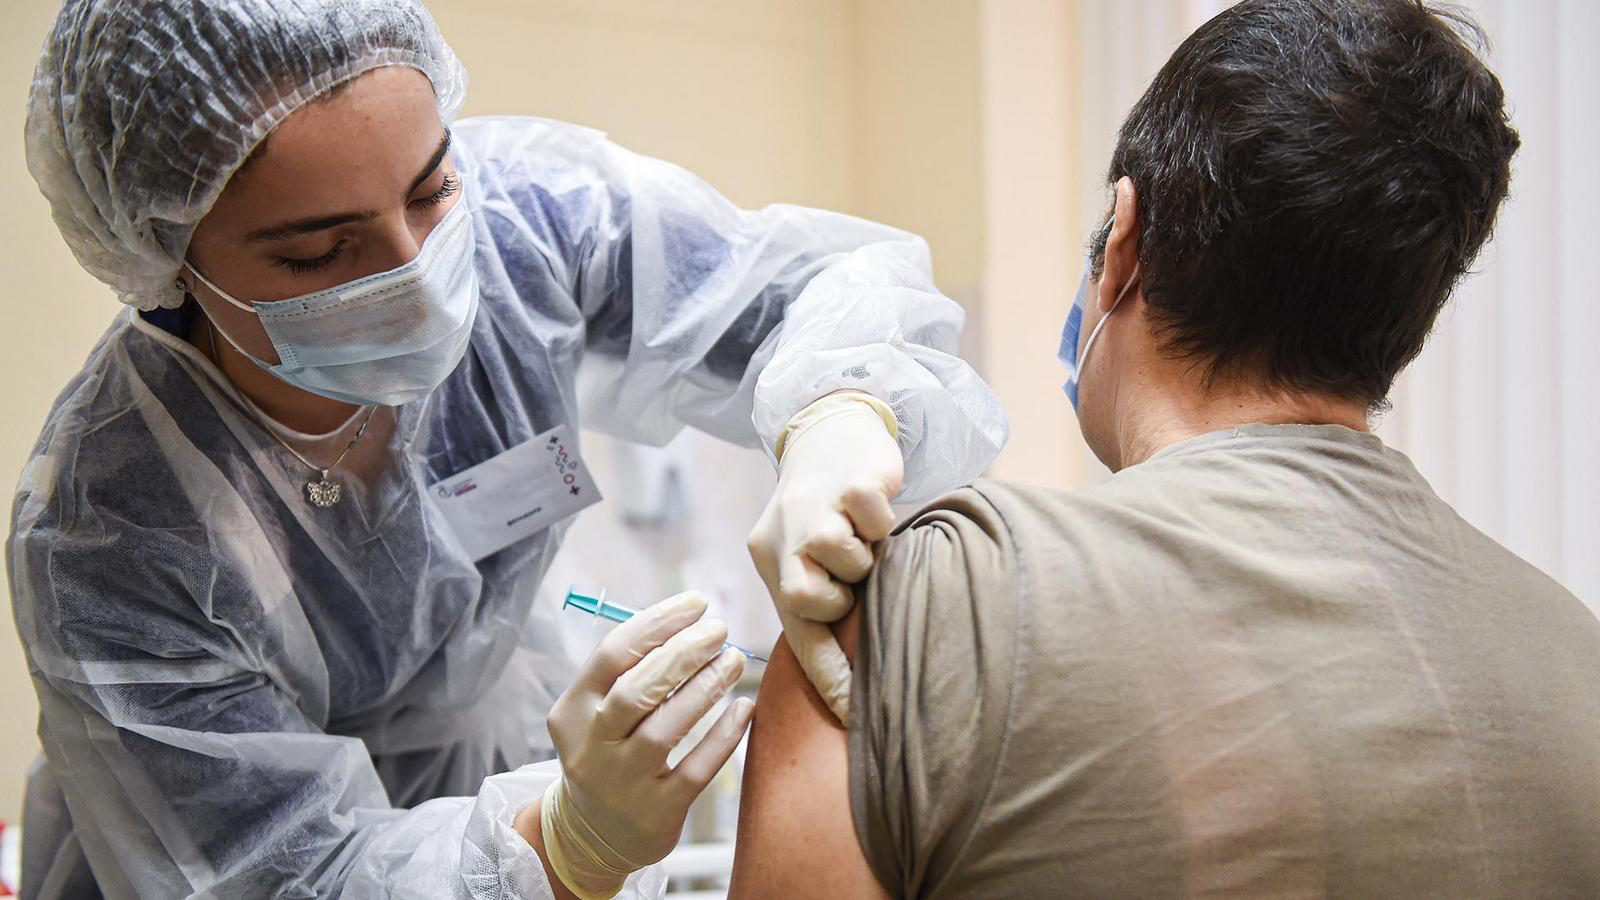 Іноземці та особи без громадянства можуть вакцинуватися від COVID-19 в Україні